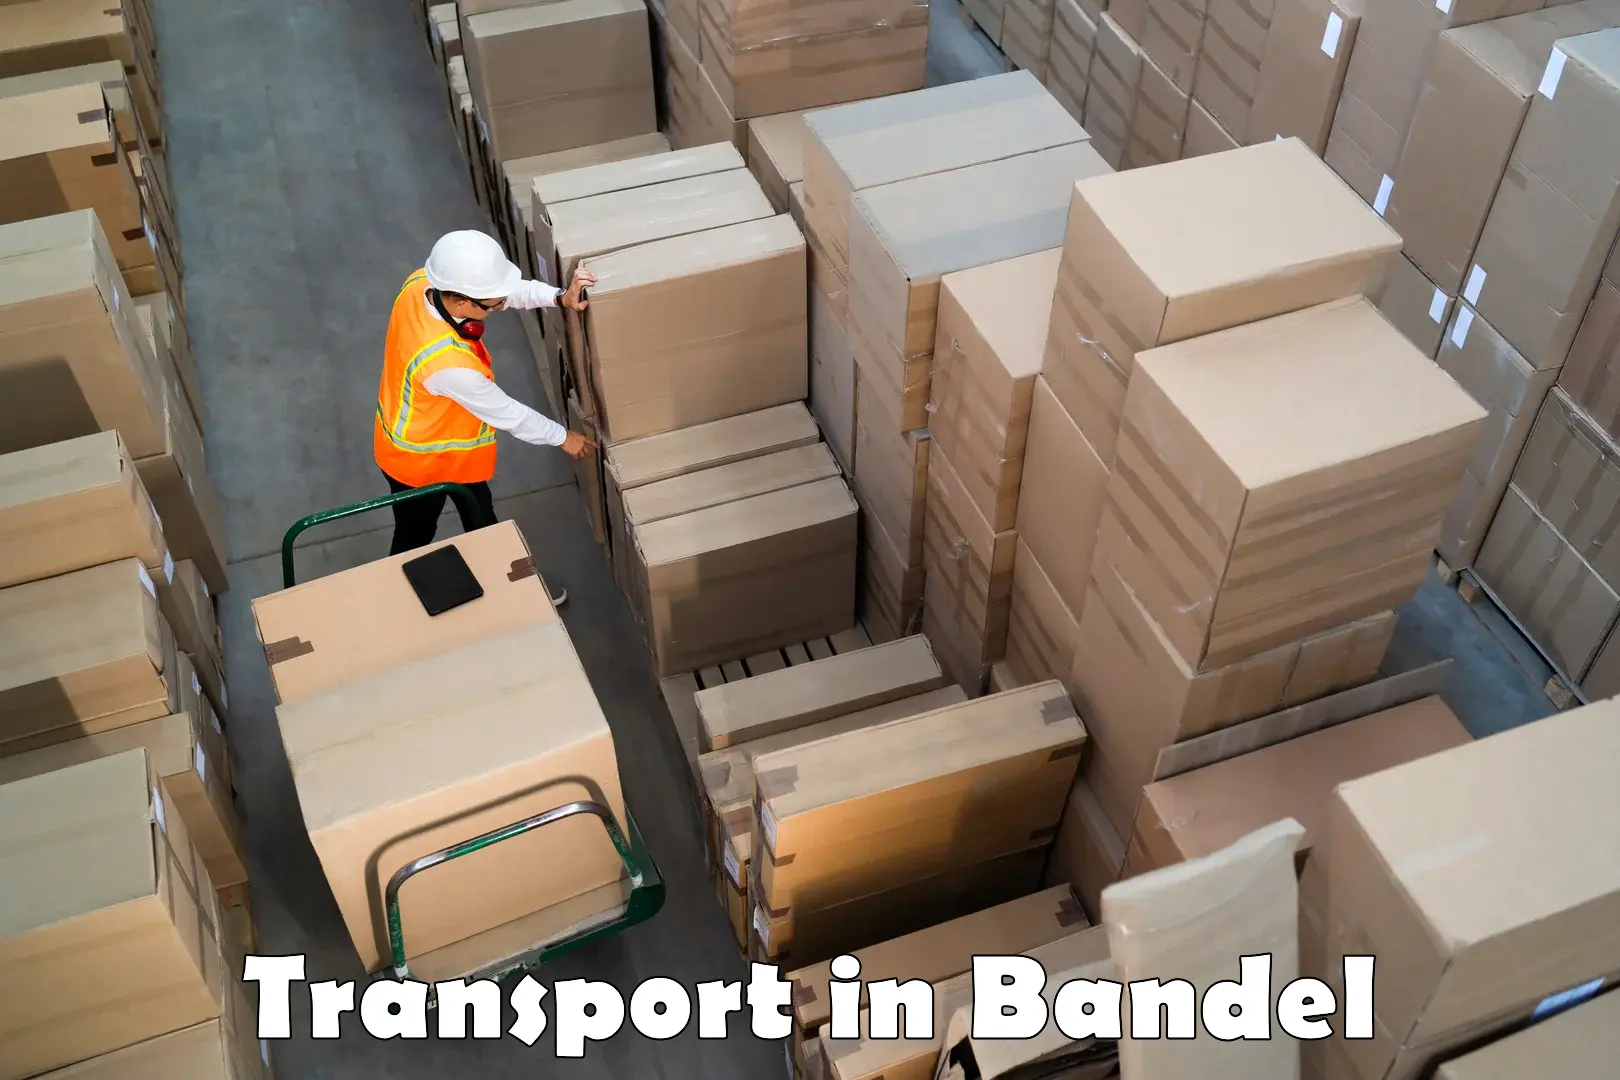 Road transport services in Bandel